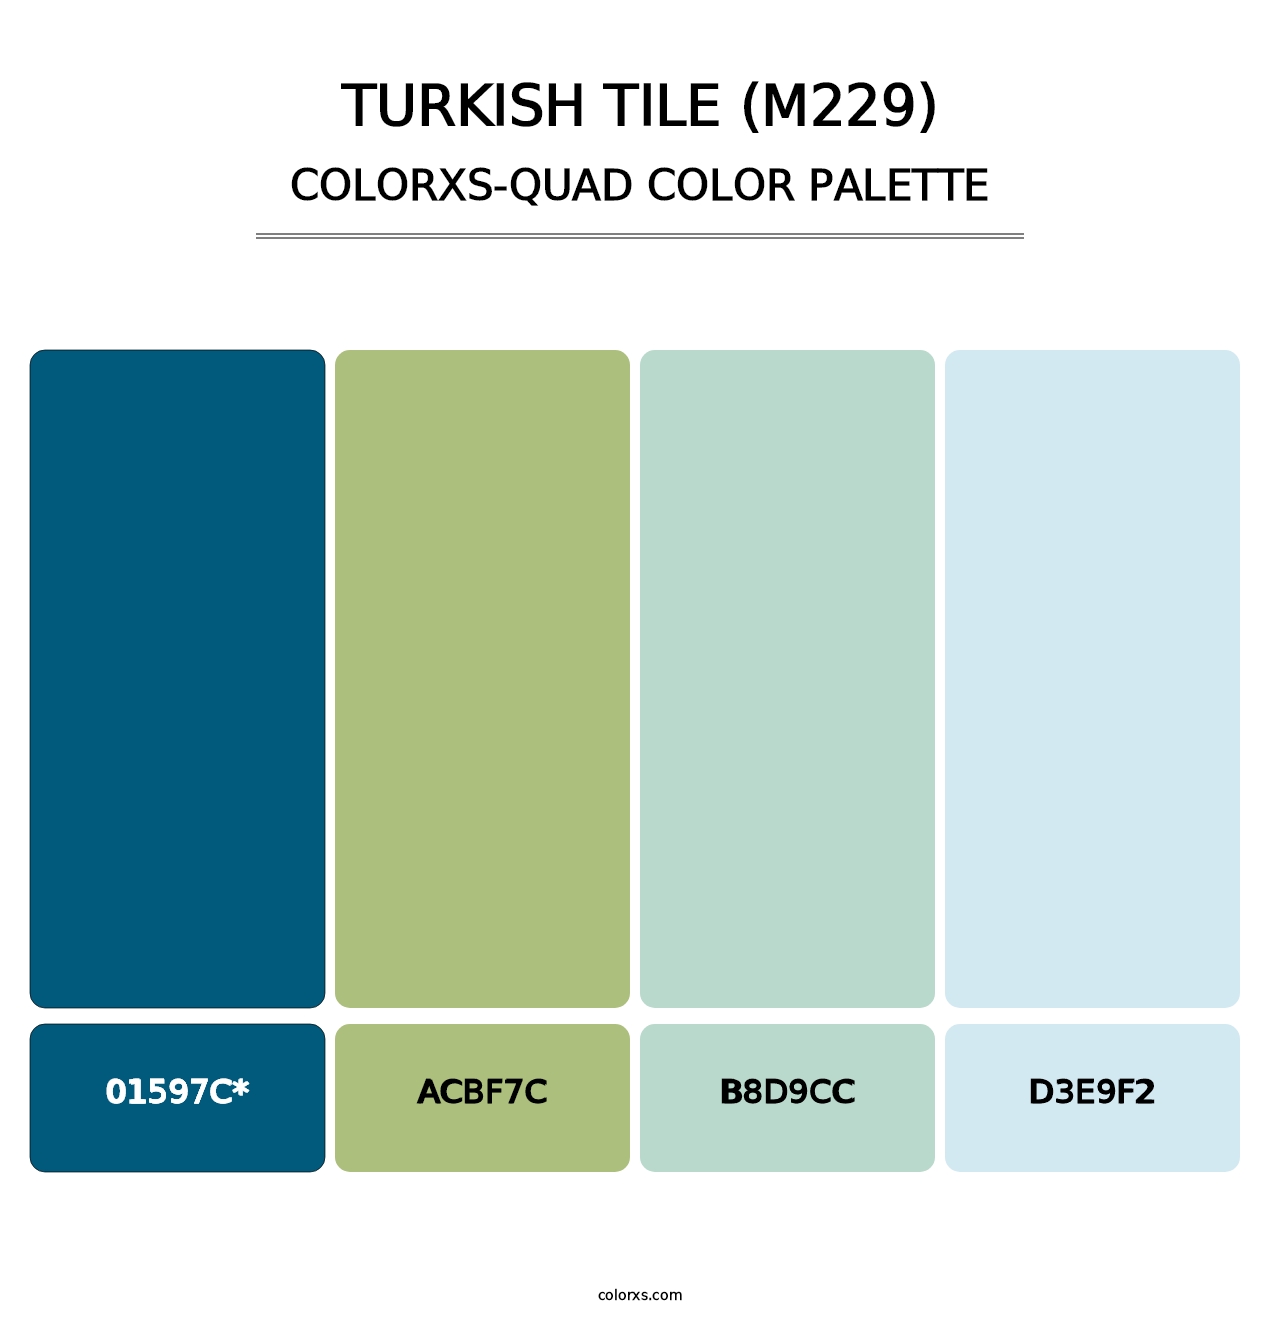 Turkish Tile (M229) - Colorxs Quad Palette